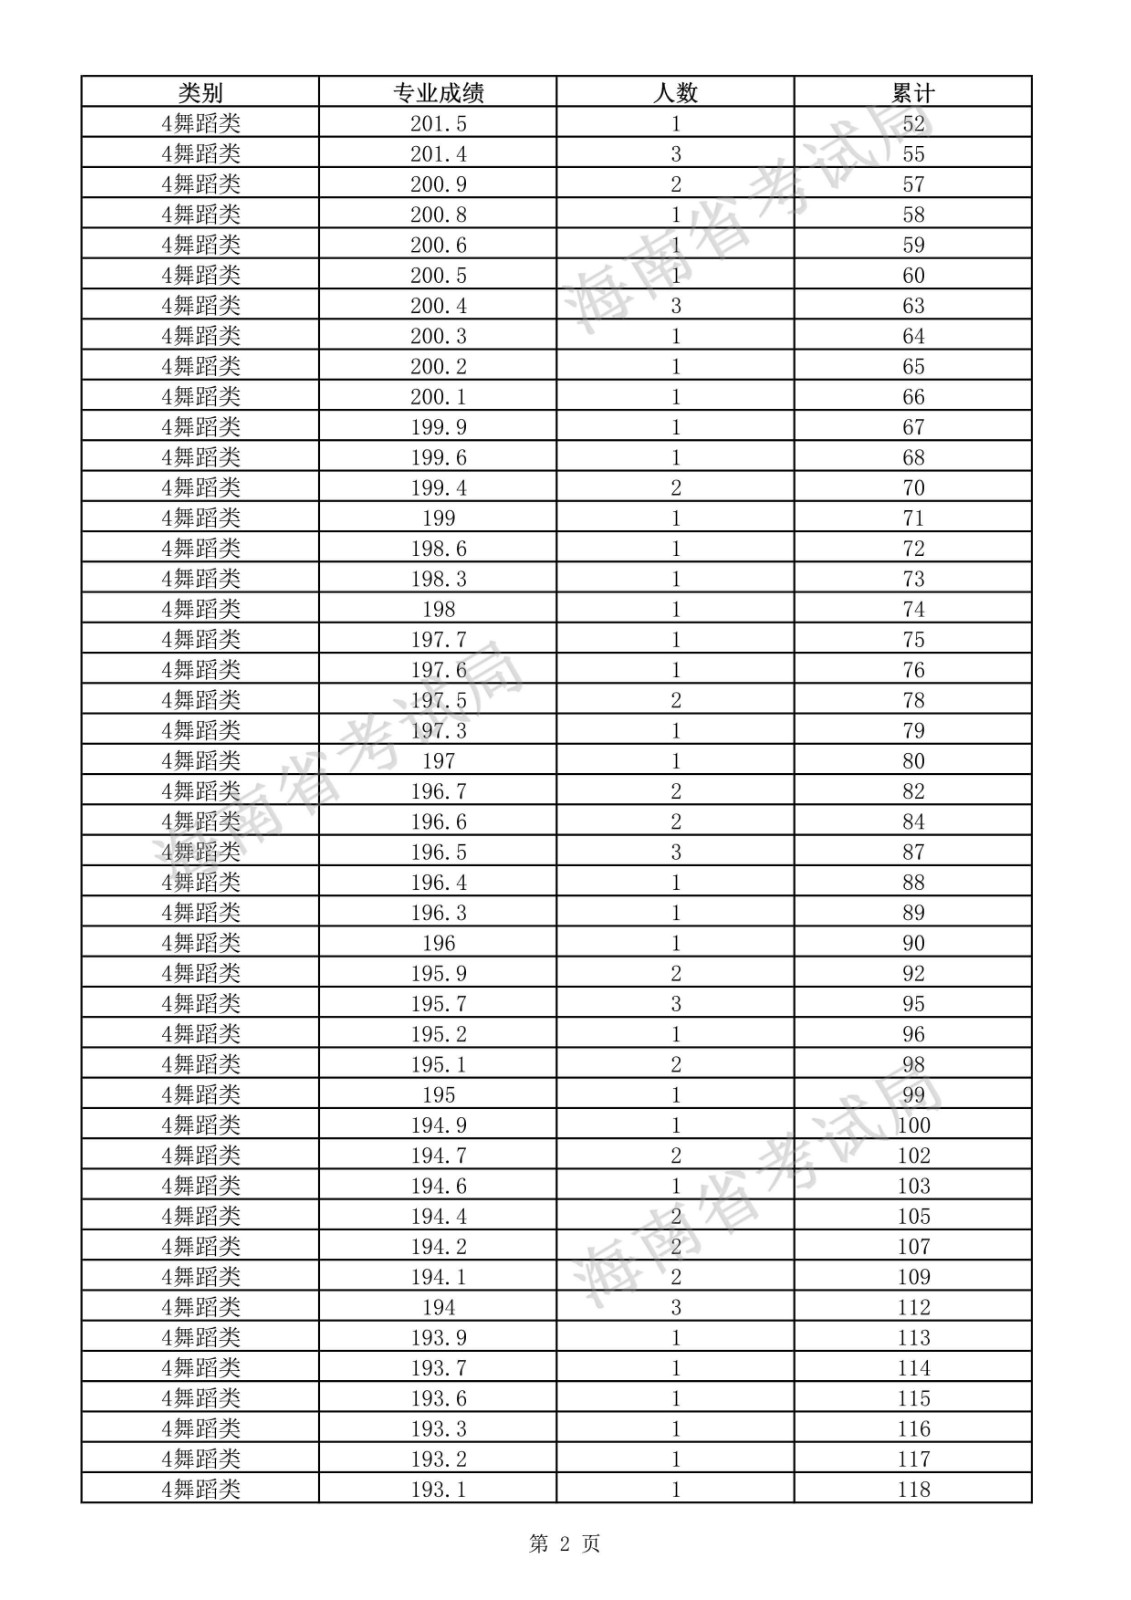 2021年海南省普通高考总分350分（含）以上的舞蹈类考生专业成绩分布表